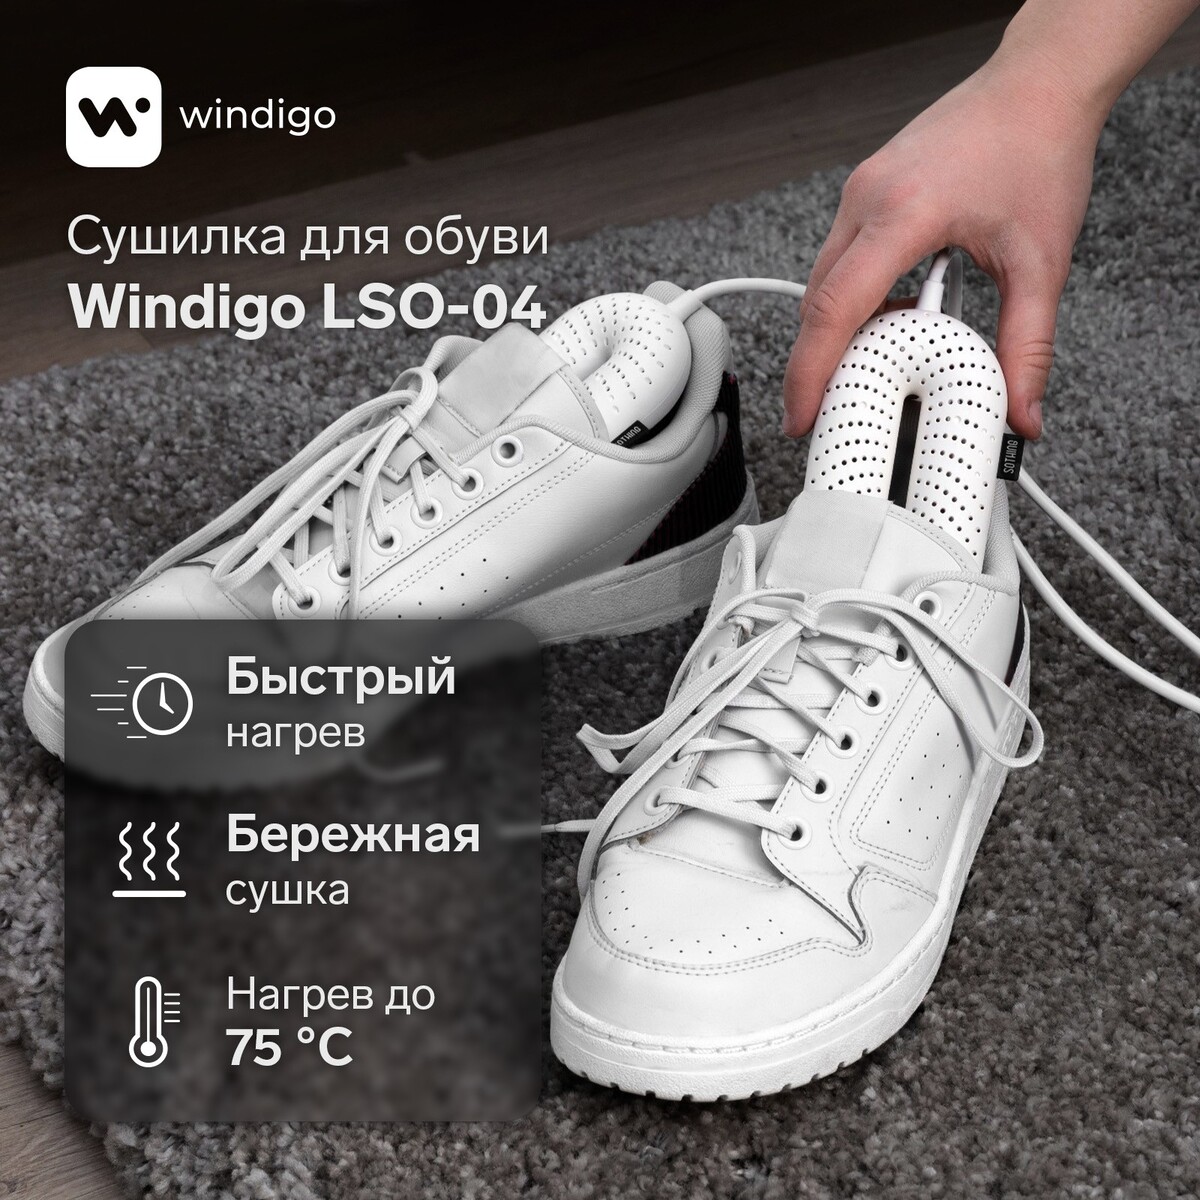 Сушилка для обуви windigo lso-04, 17 см, 20 вт, индикатор, белая timson сушилка для обуви противогрибковая